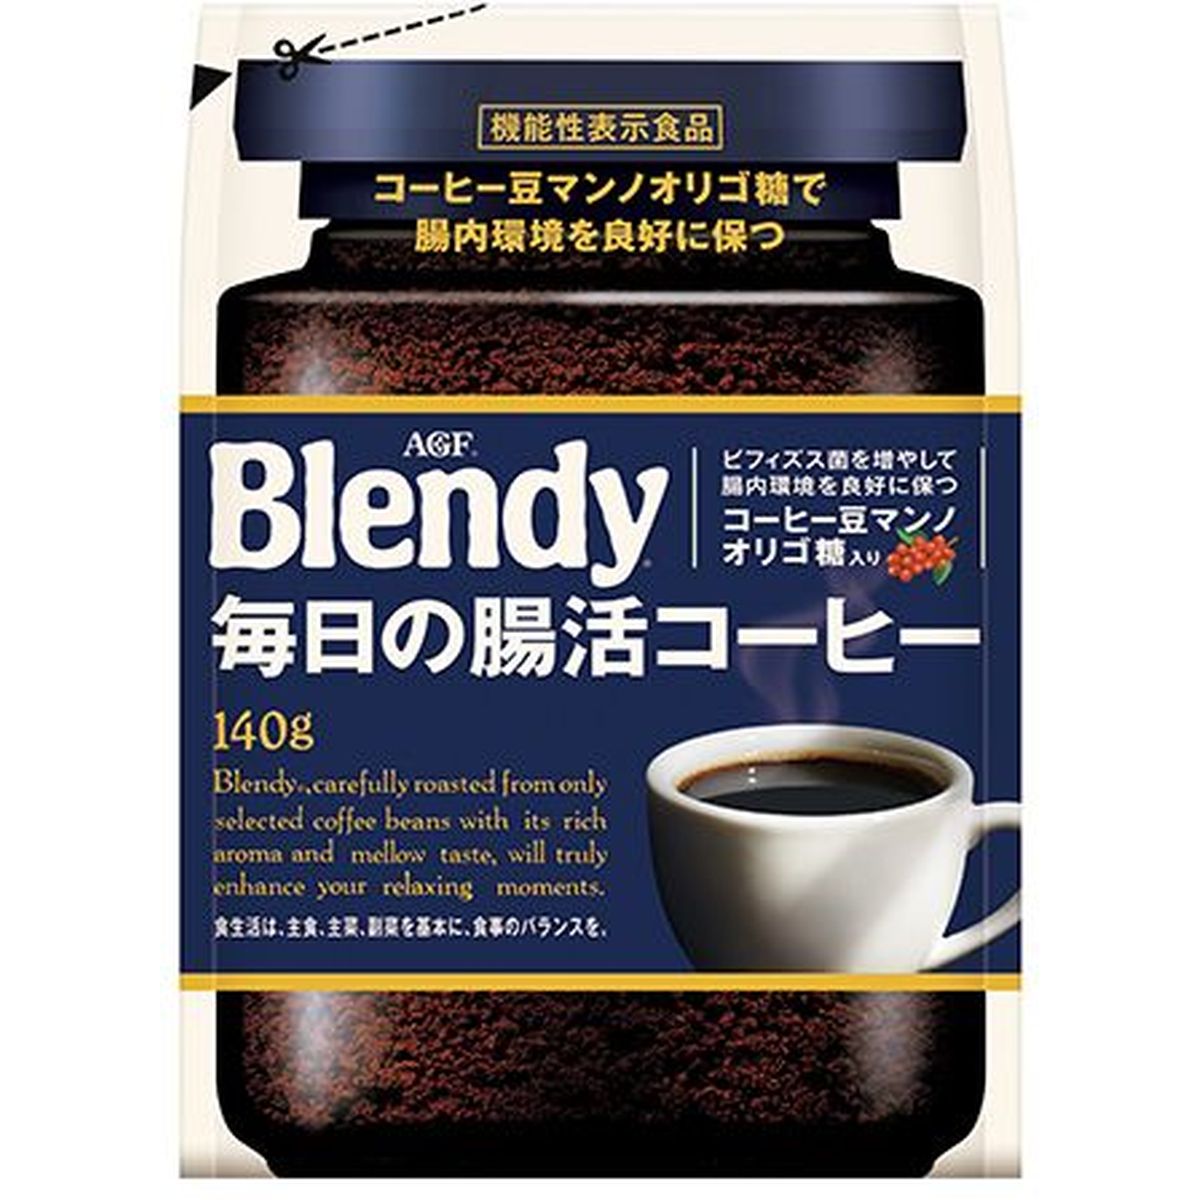 【12個入リ】AGF ブレンディ 毎日ノ腸活コーヒー 袋 140g